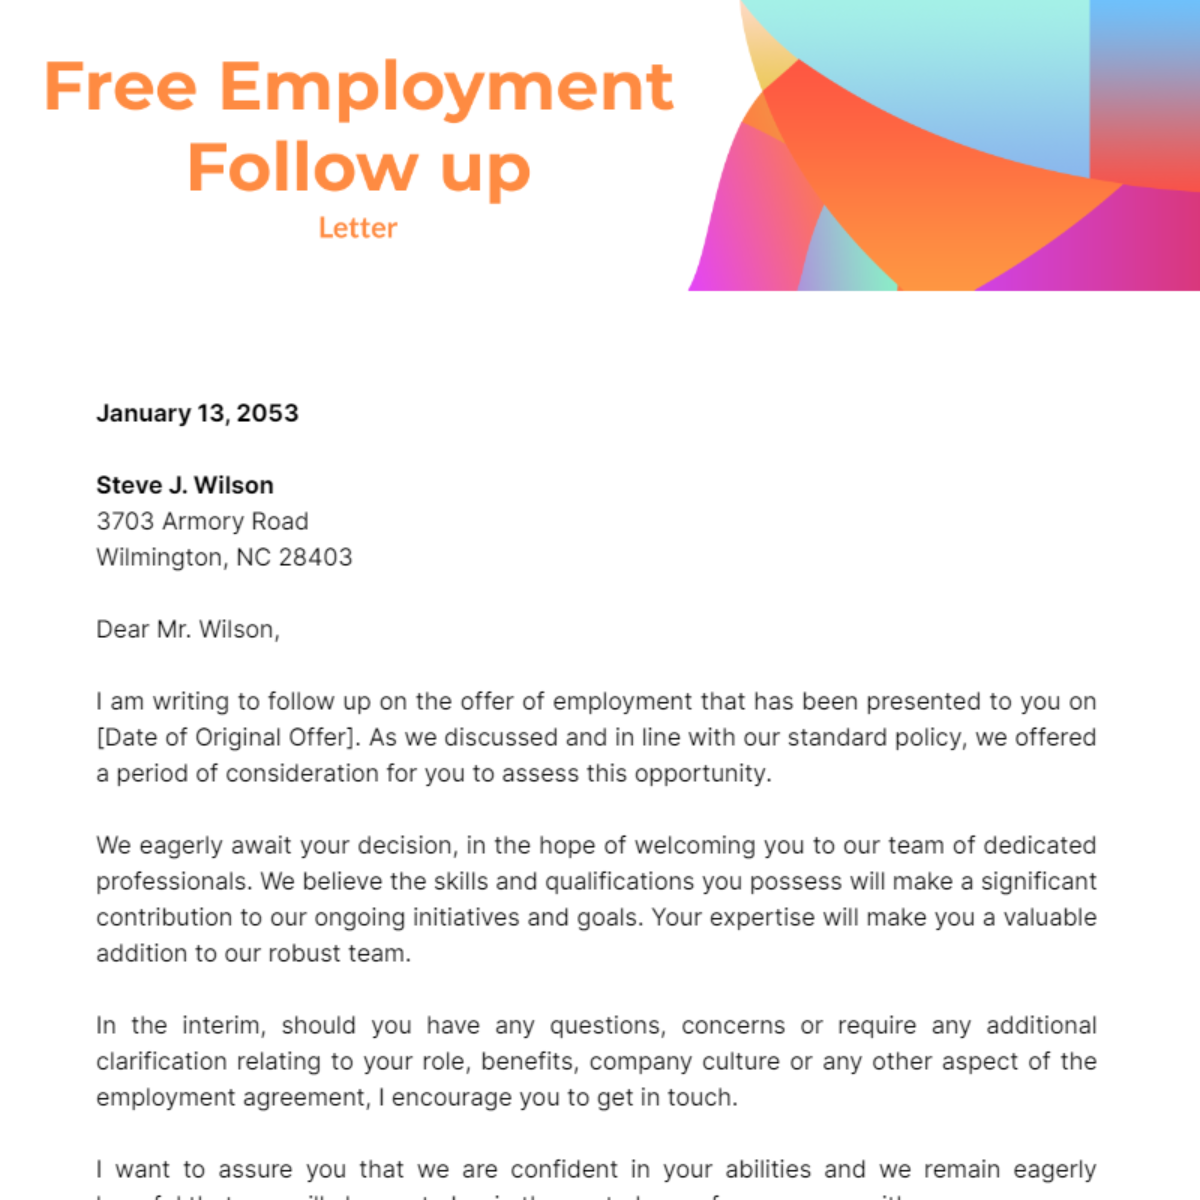 Employment Follow up Letter Template